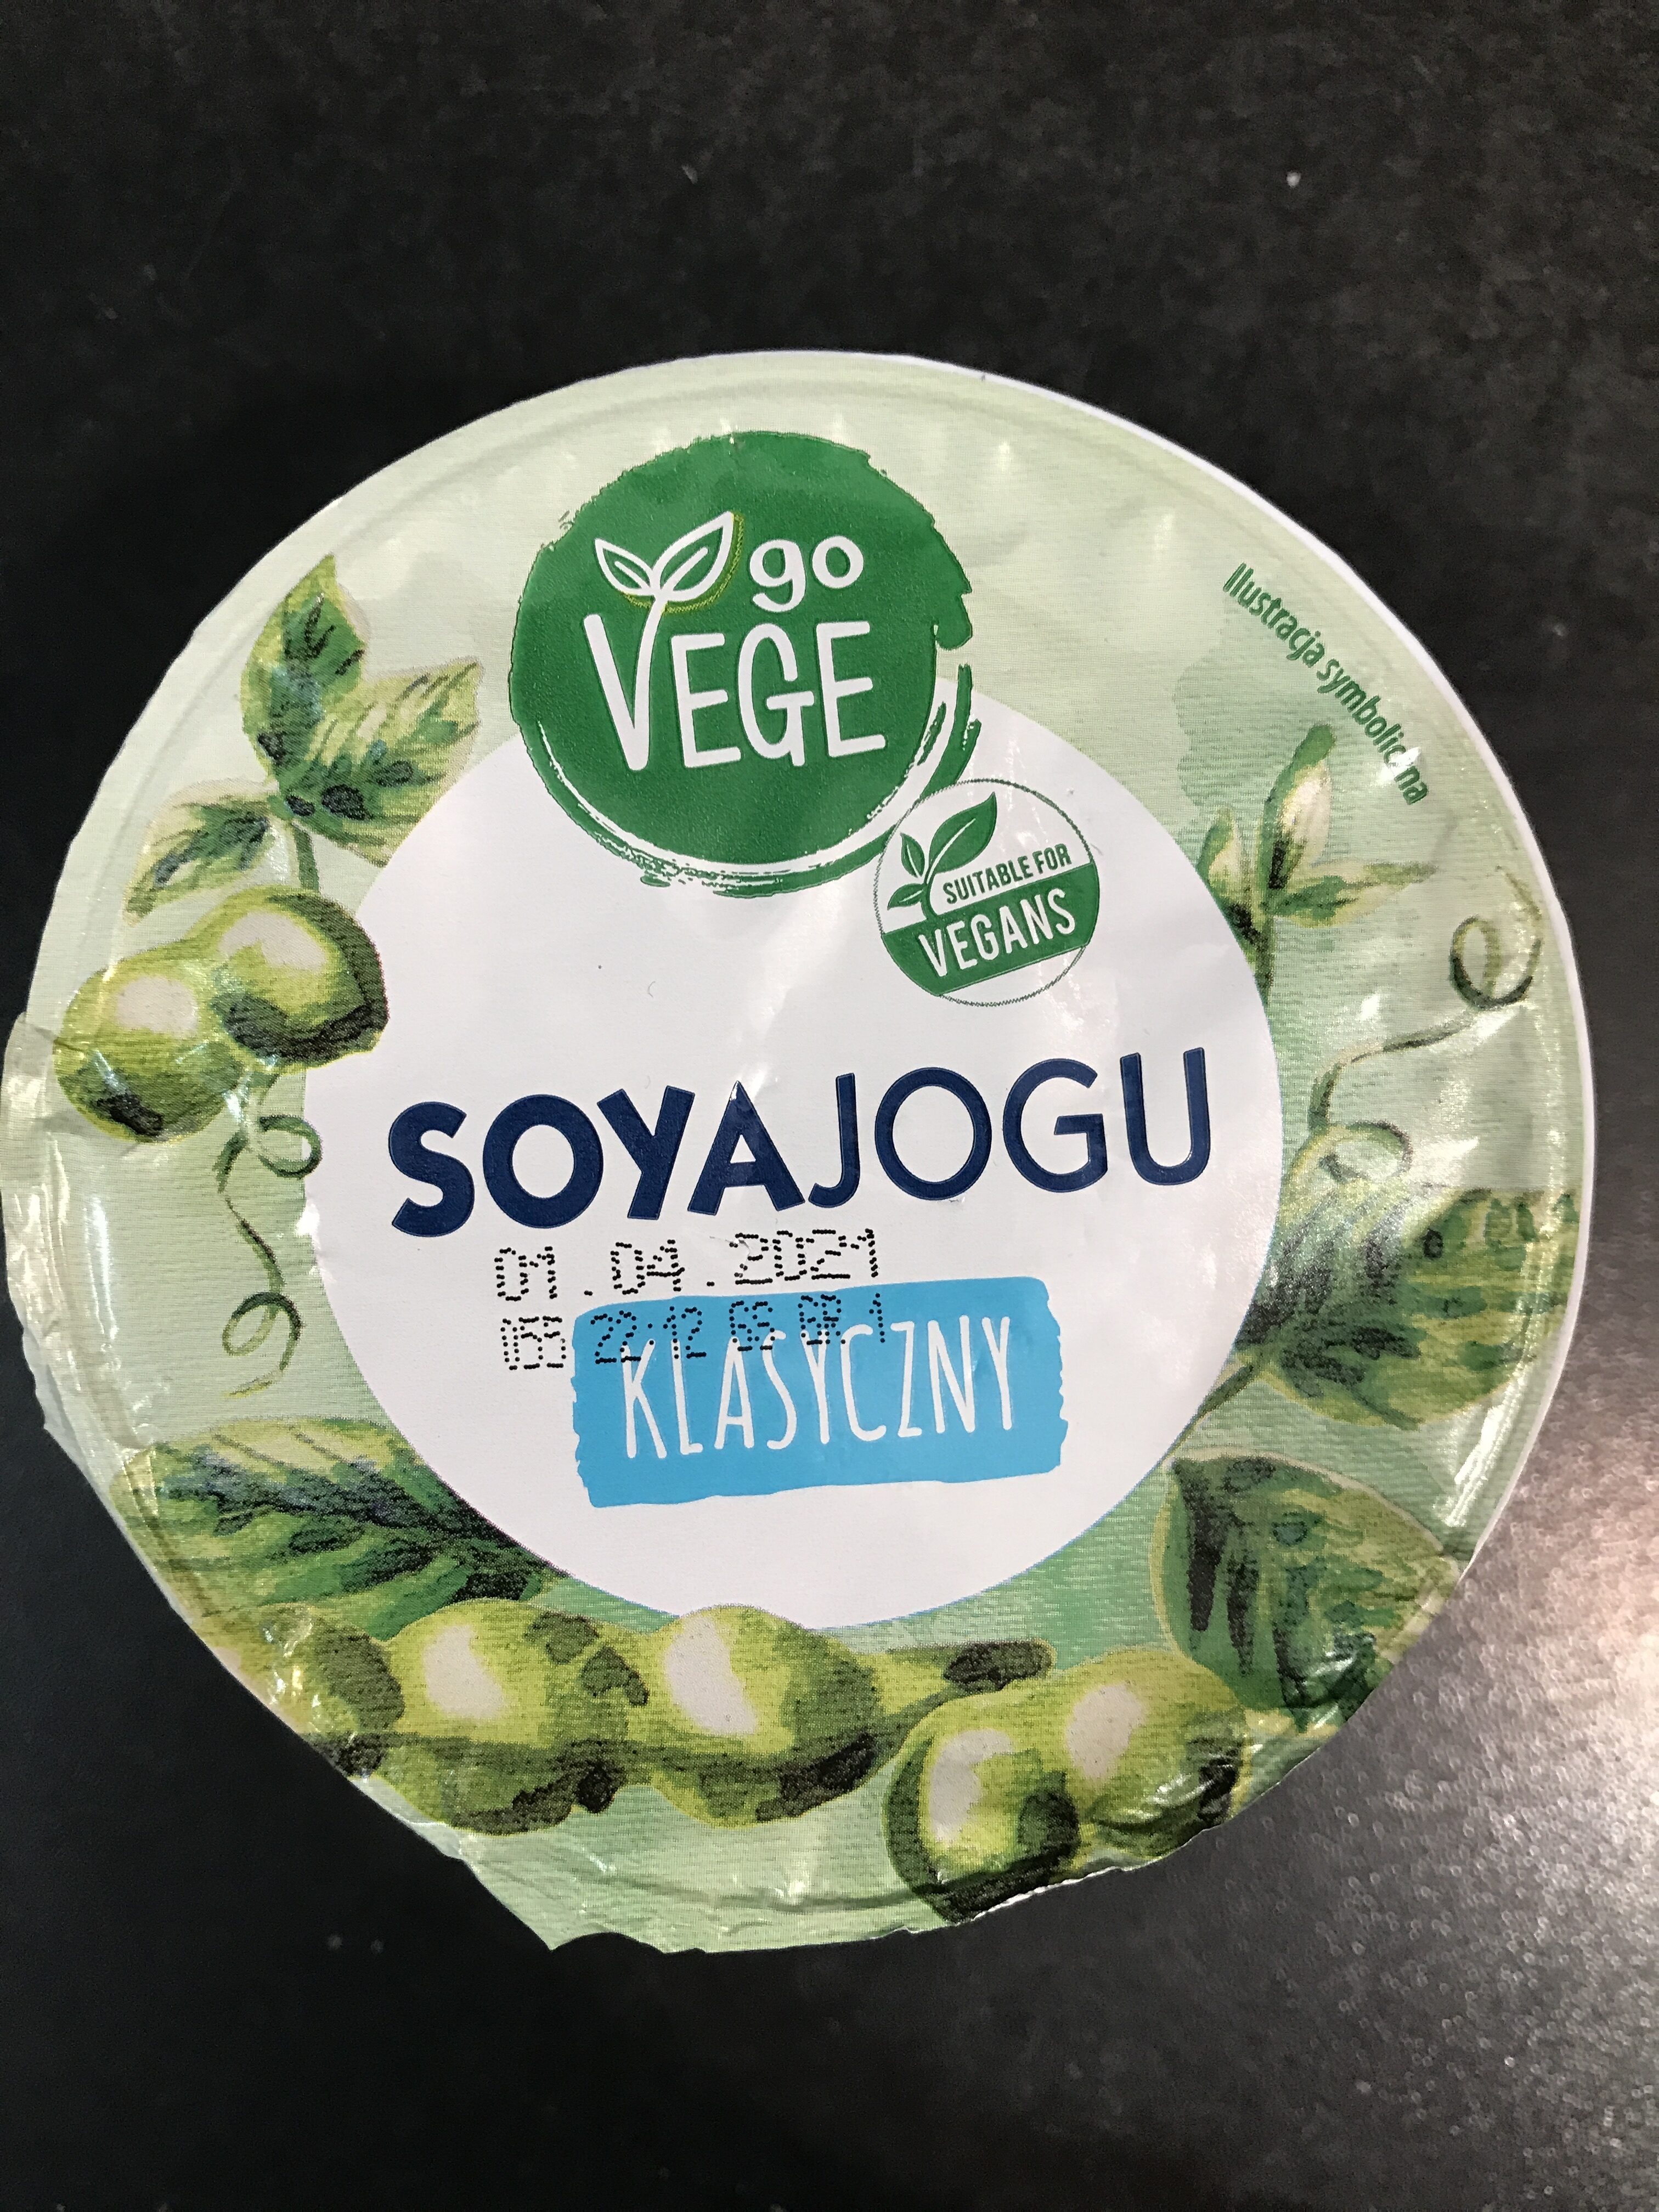 Soyajogu - Product